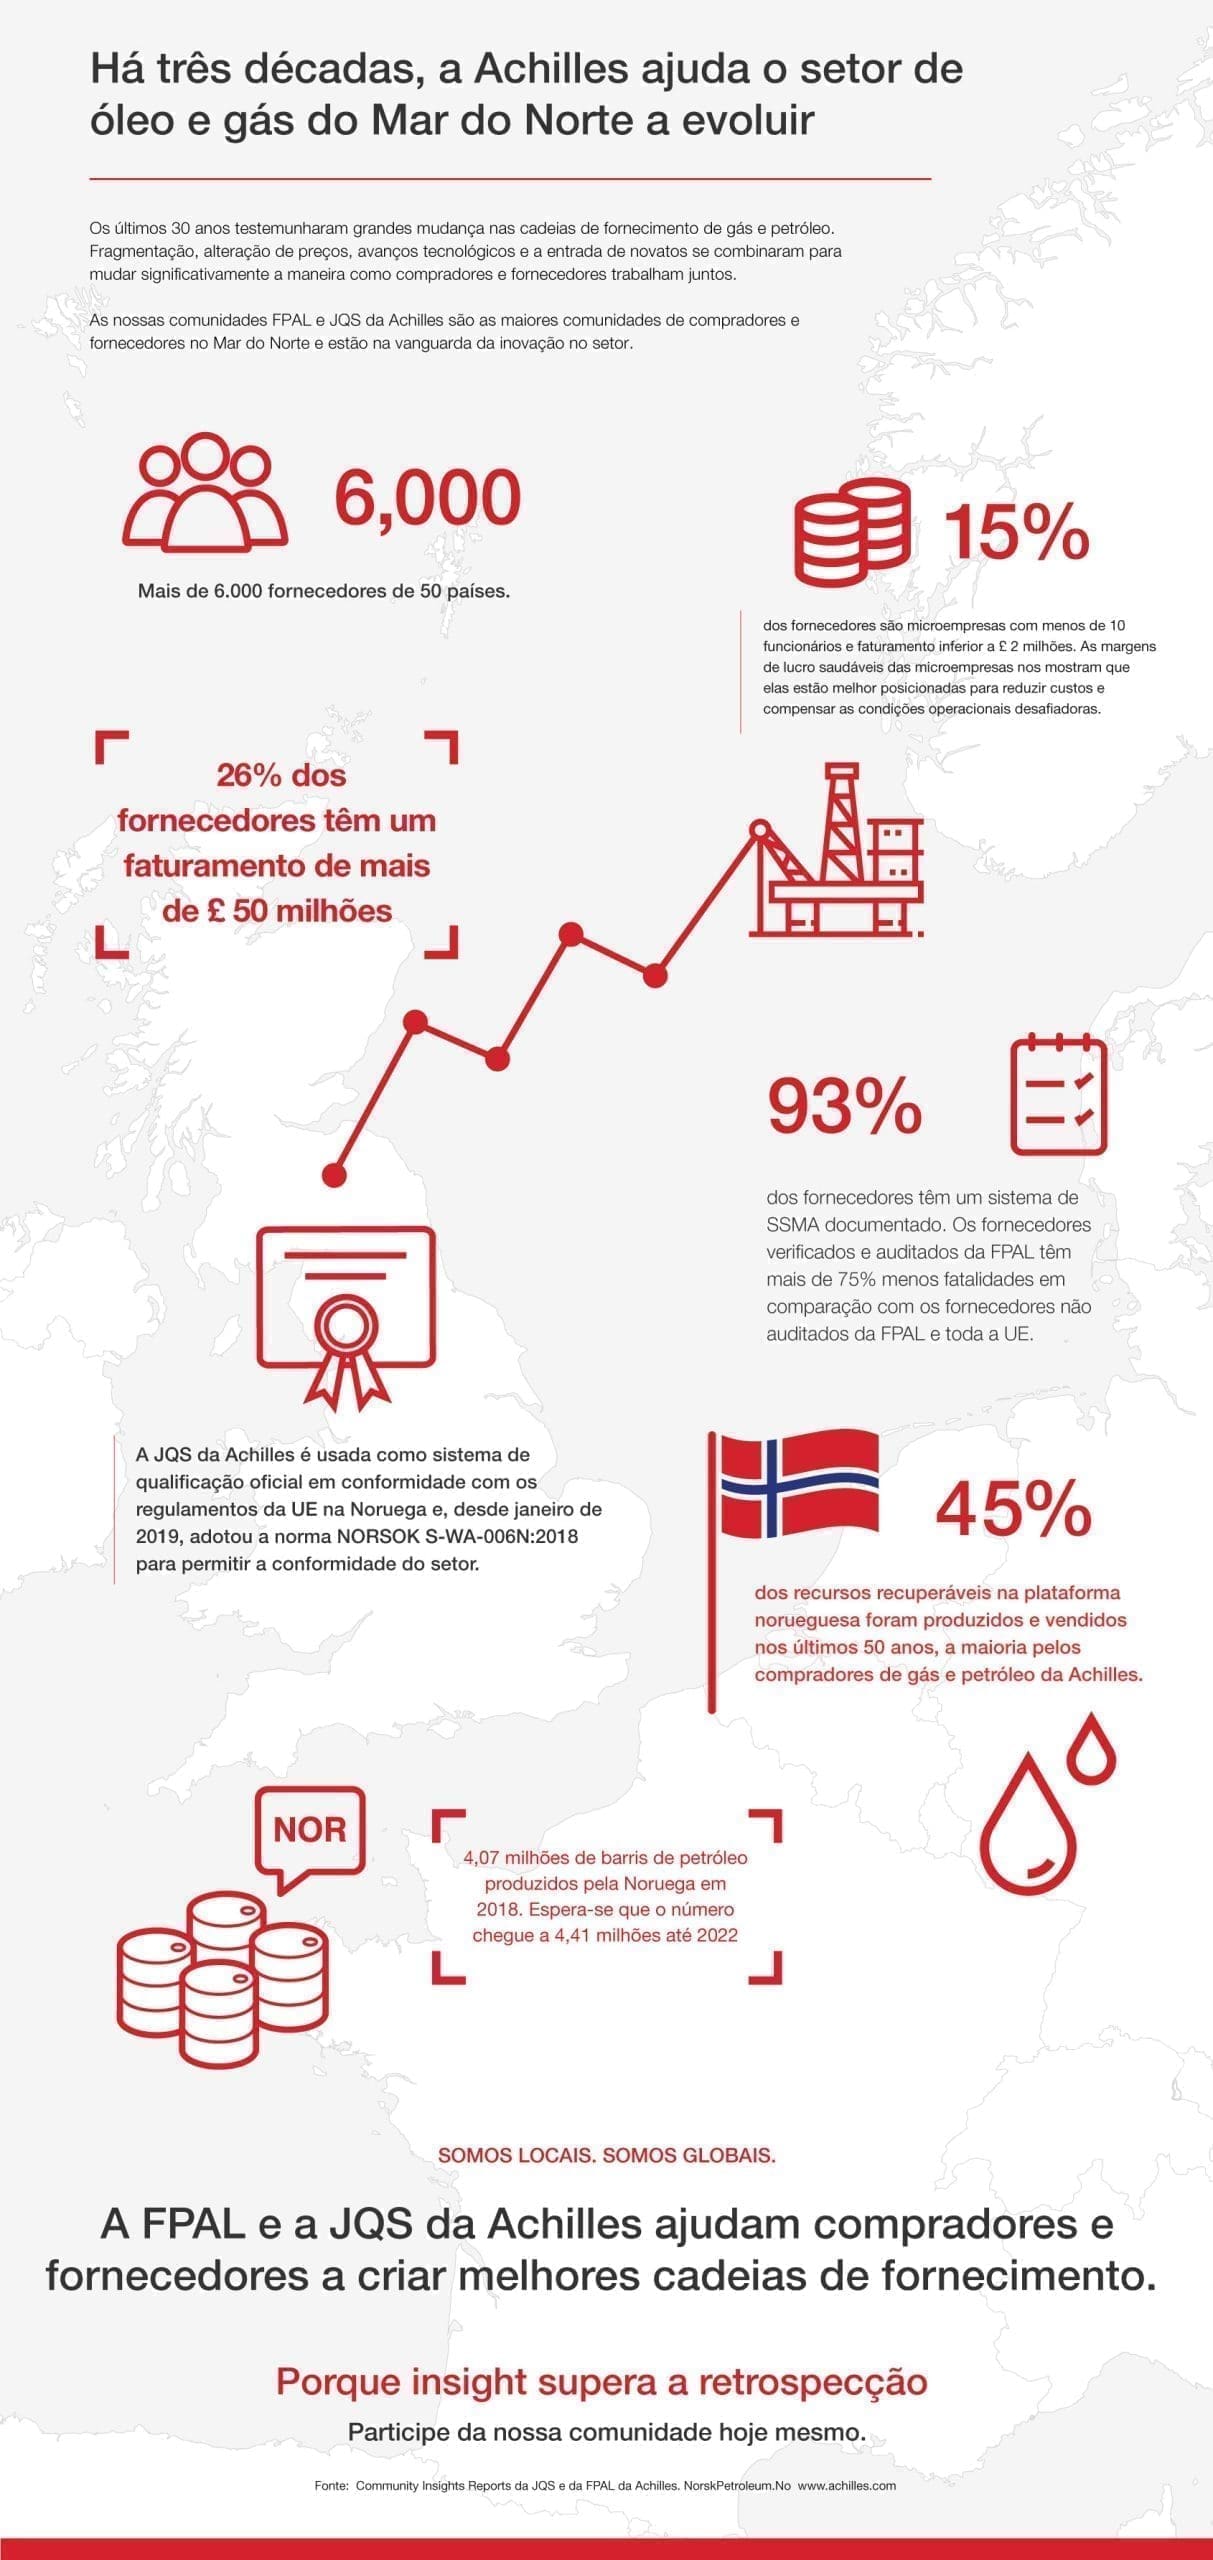 Infographic: Exploração da base de fornecimento de óleo e gás  do Mar do Norte